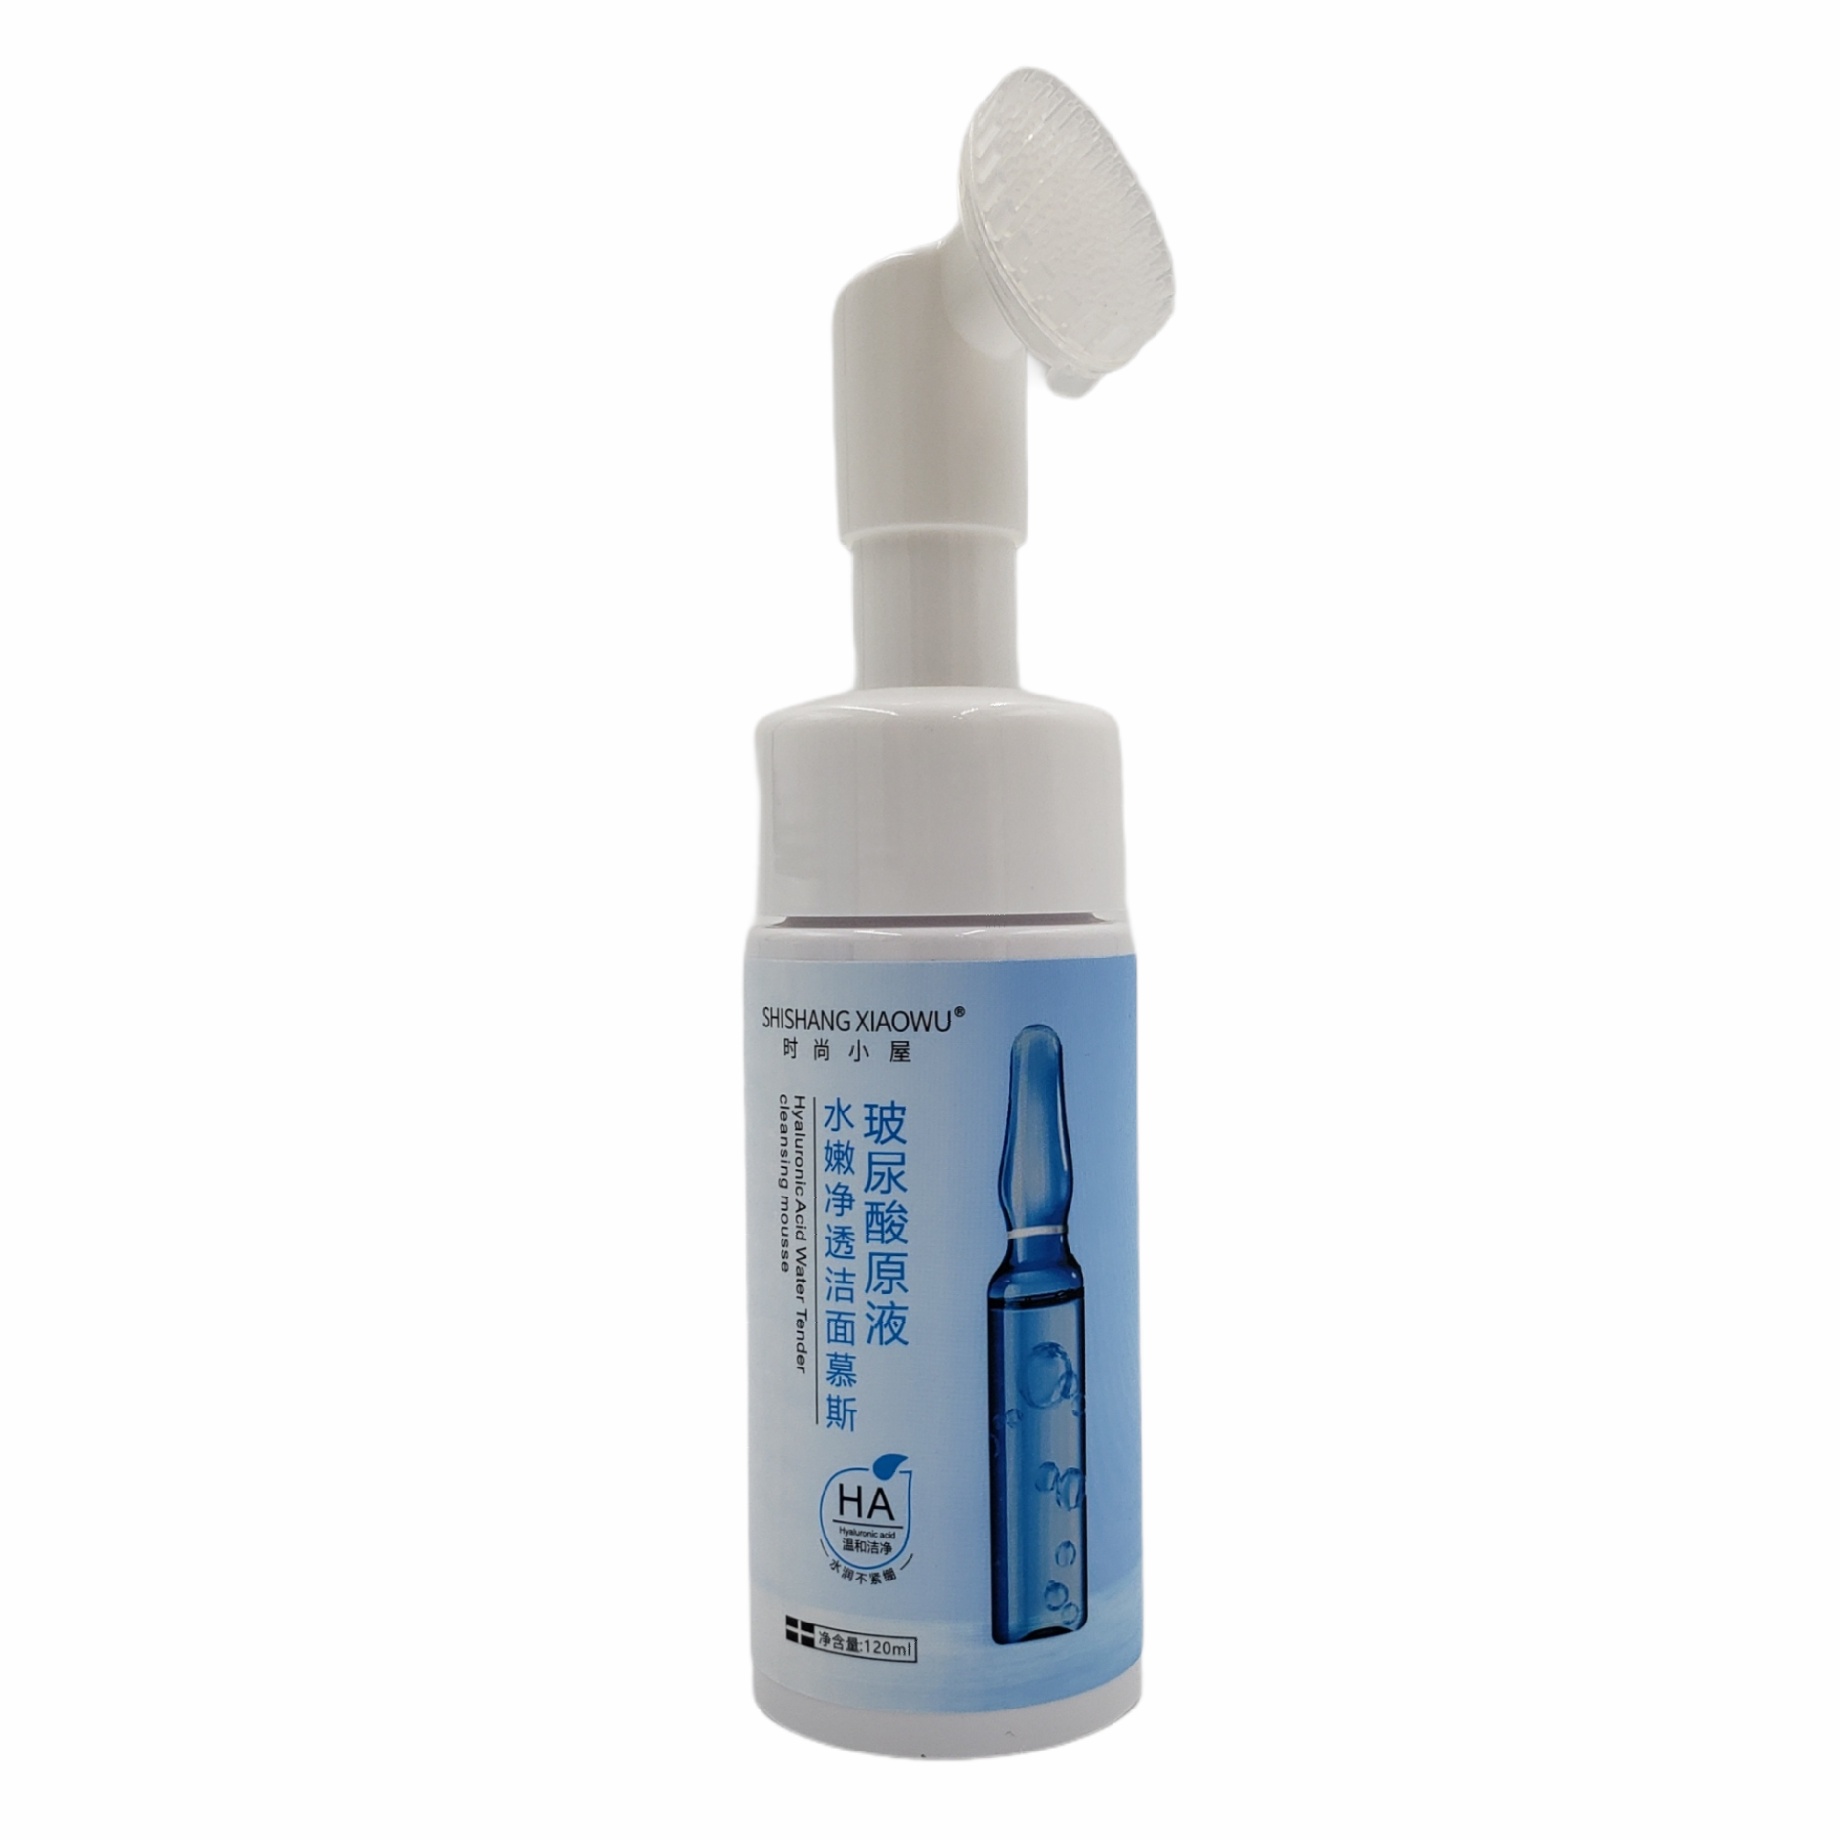 Limpiador facial en espuma con acido hialuronico 120ml